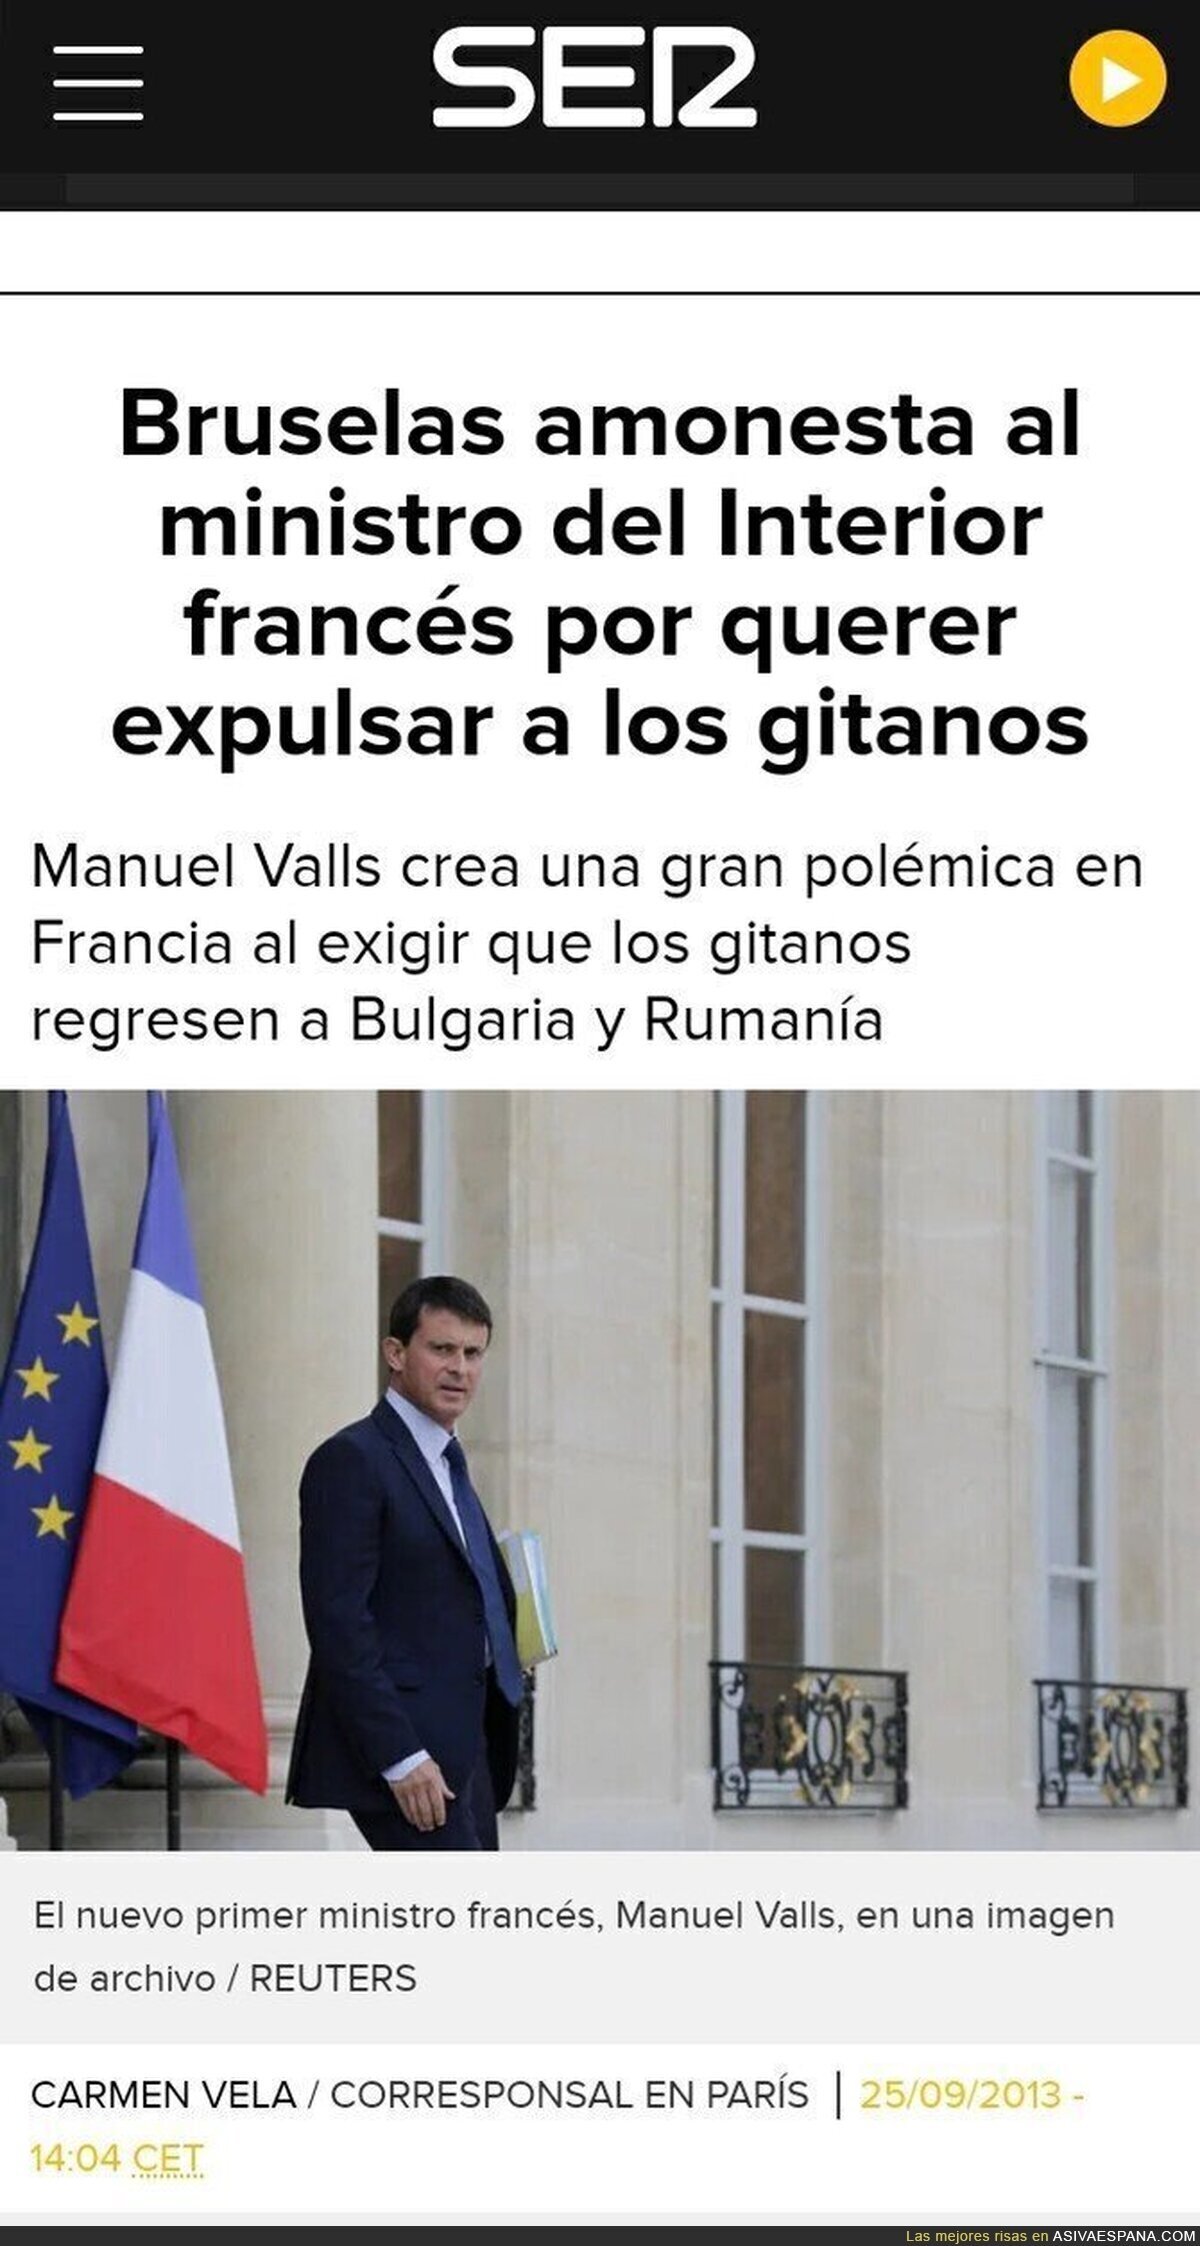 La hemeroteca atiza al masón Manuel Valls